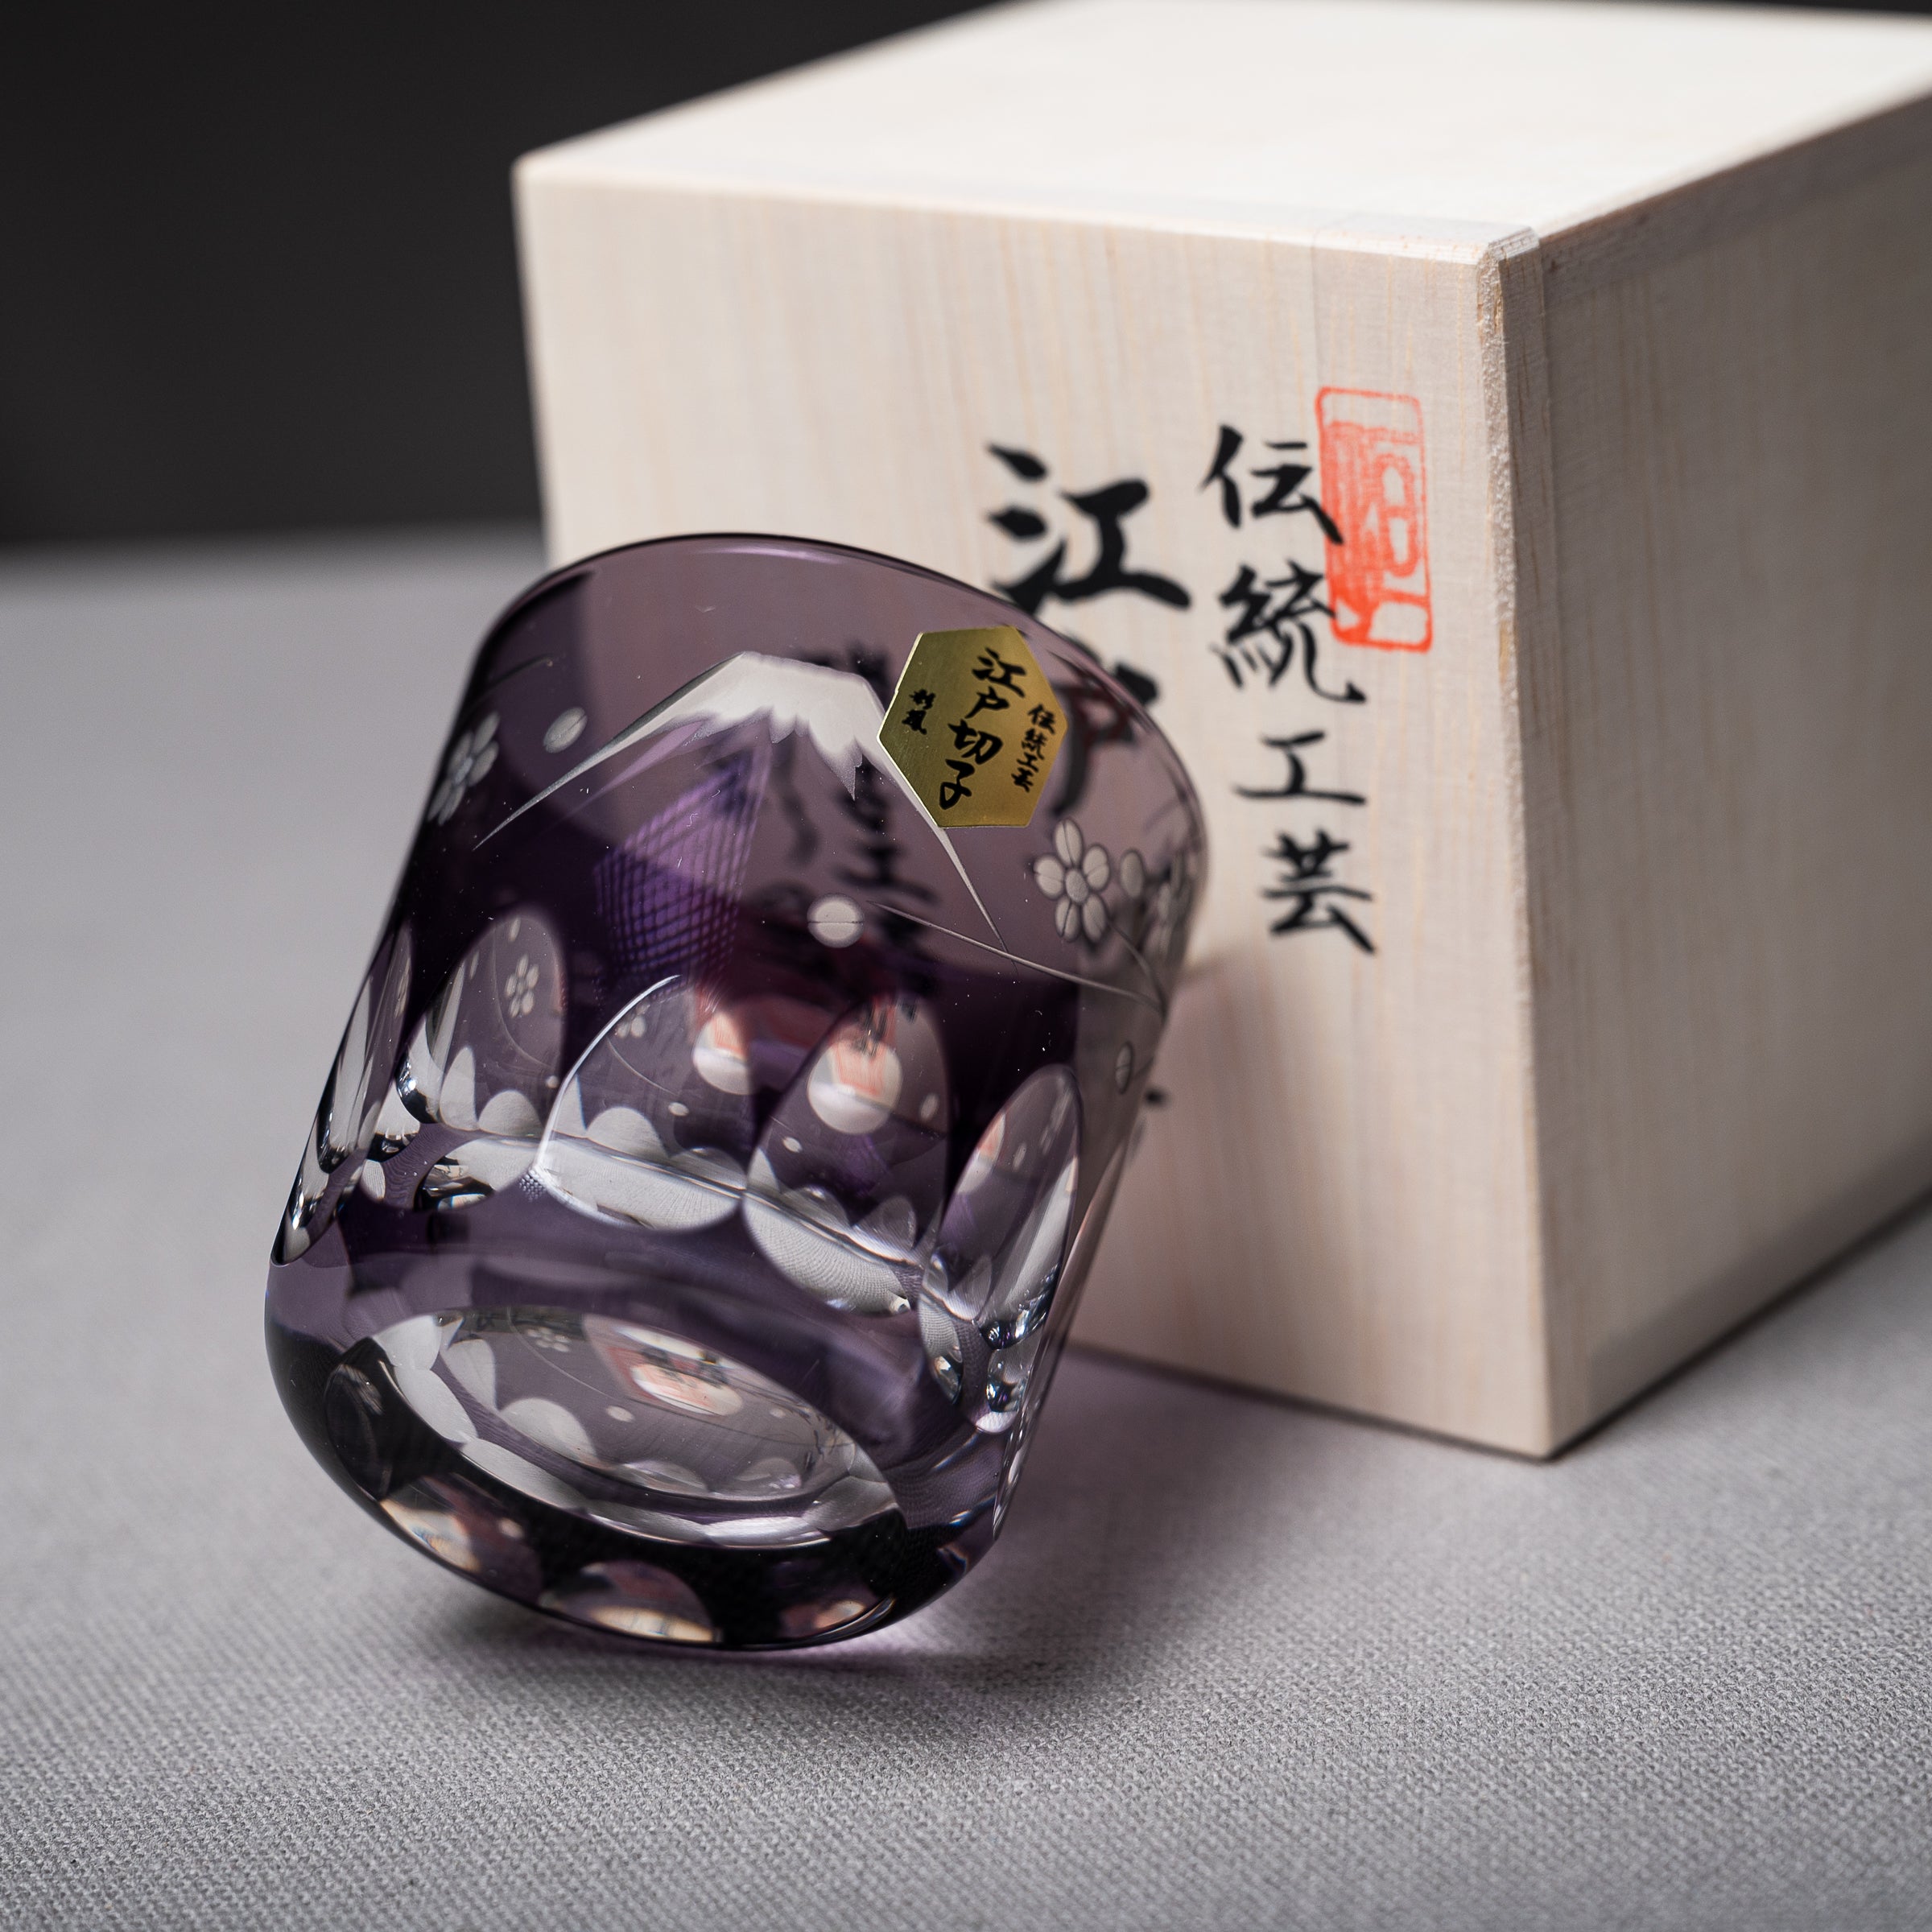 Premium Edo-Kiriko Single Sake Glass - Mt Fuji / 江戸切子 プレミアム酒カップ 梅富士